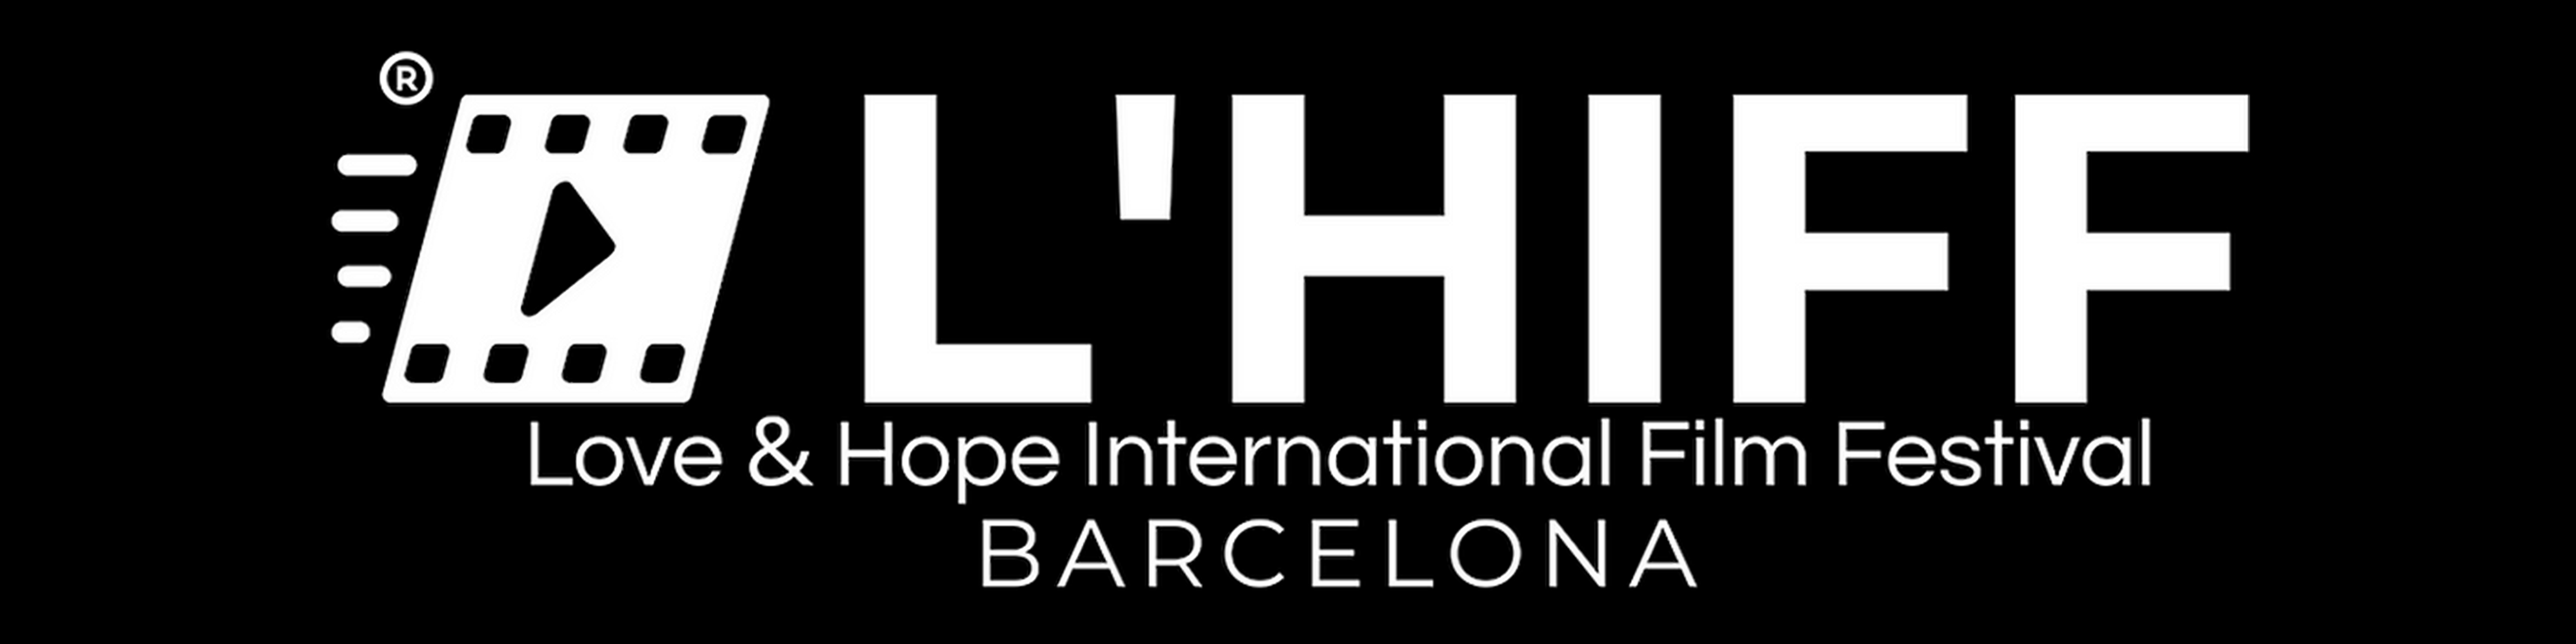 Love & Hope International Film Festival, Barcelona